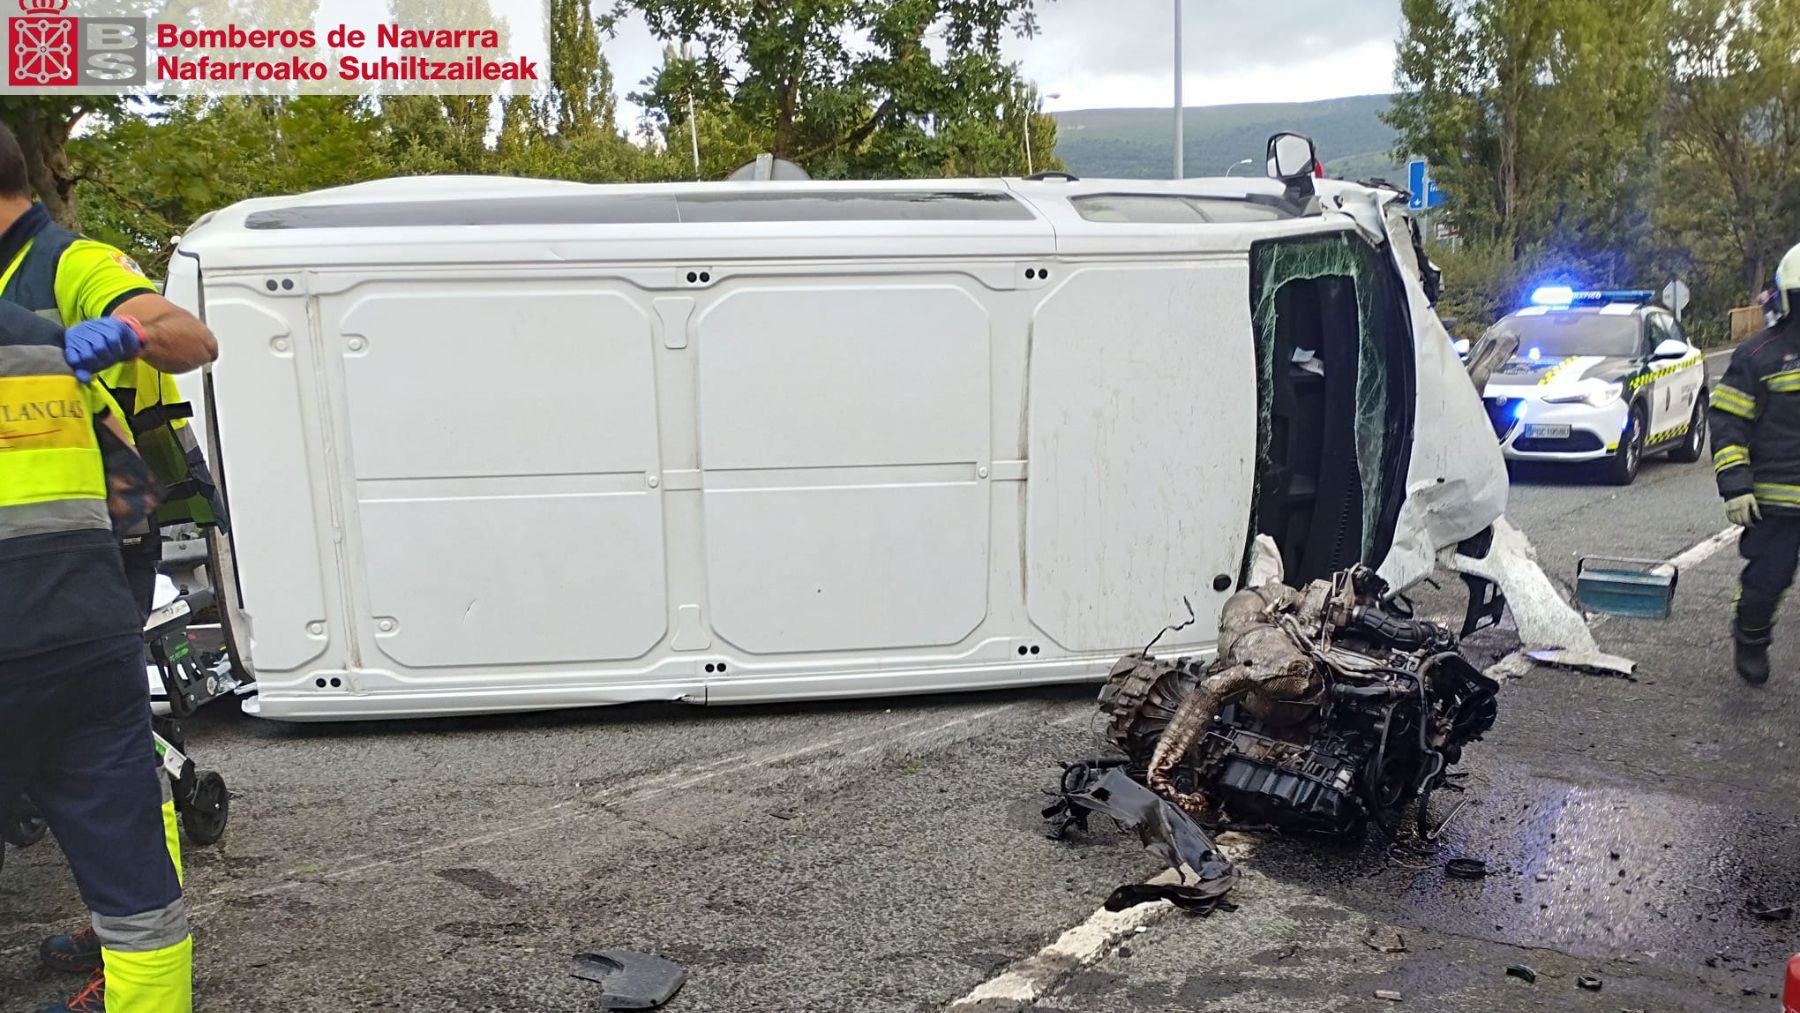 Nueve personas sufren una salida de vía en Navarra con su furgoneta: hay tres trasladados